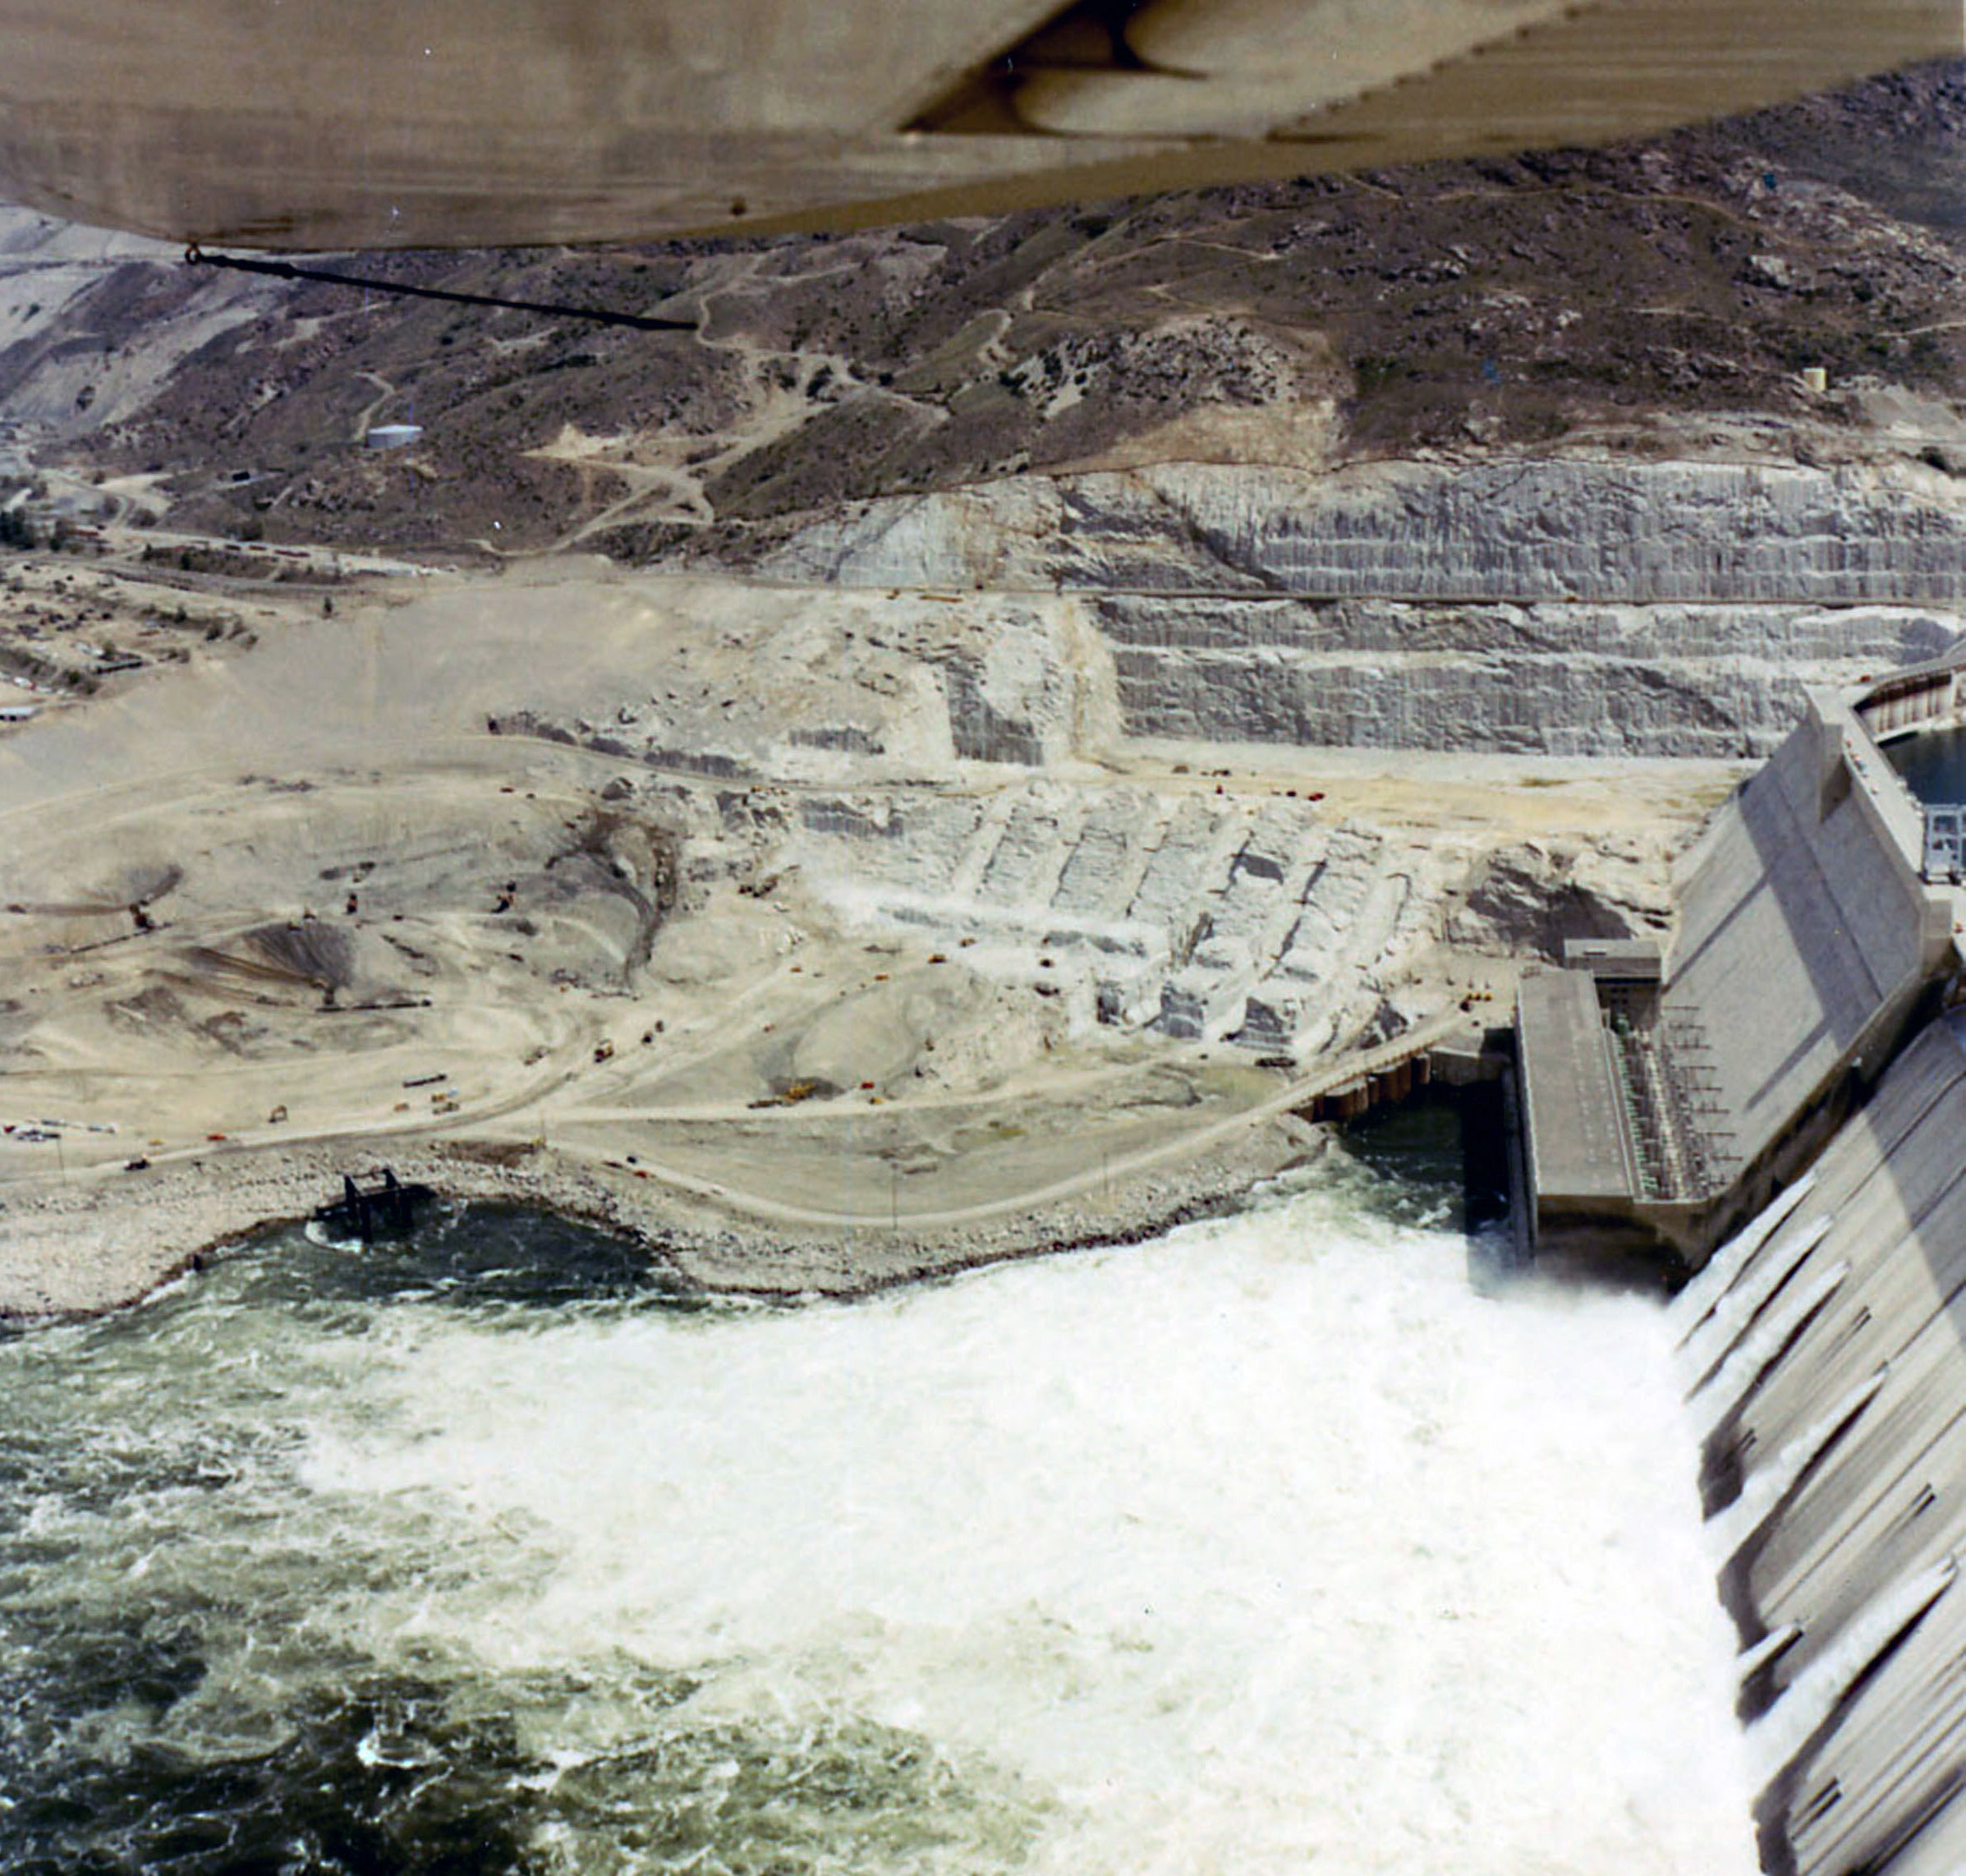 May 22, 1970. Nathaniel Washington Power Plant construction at Grand Coulee Dam.